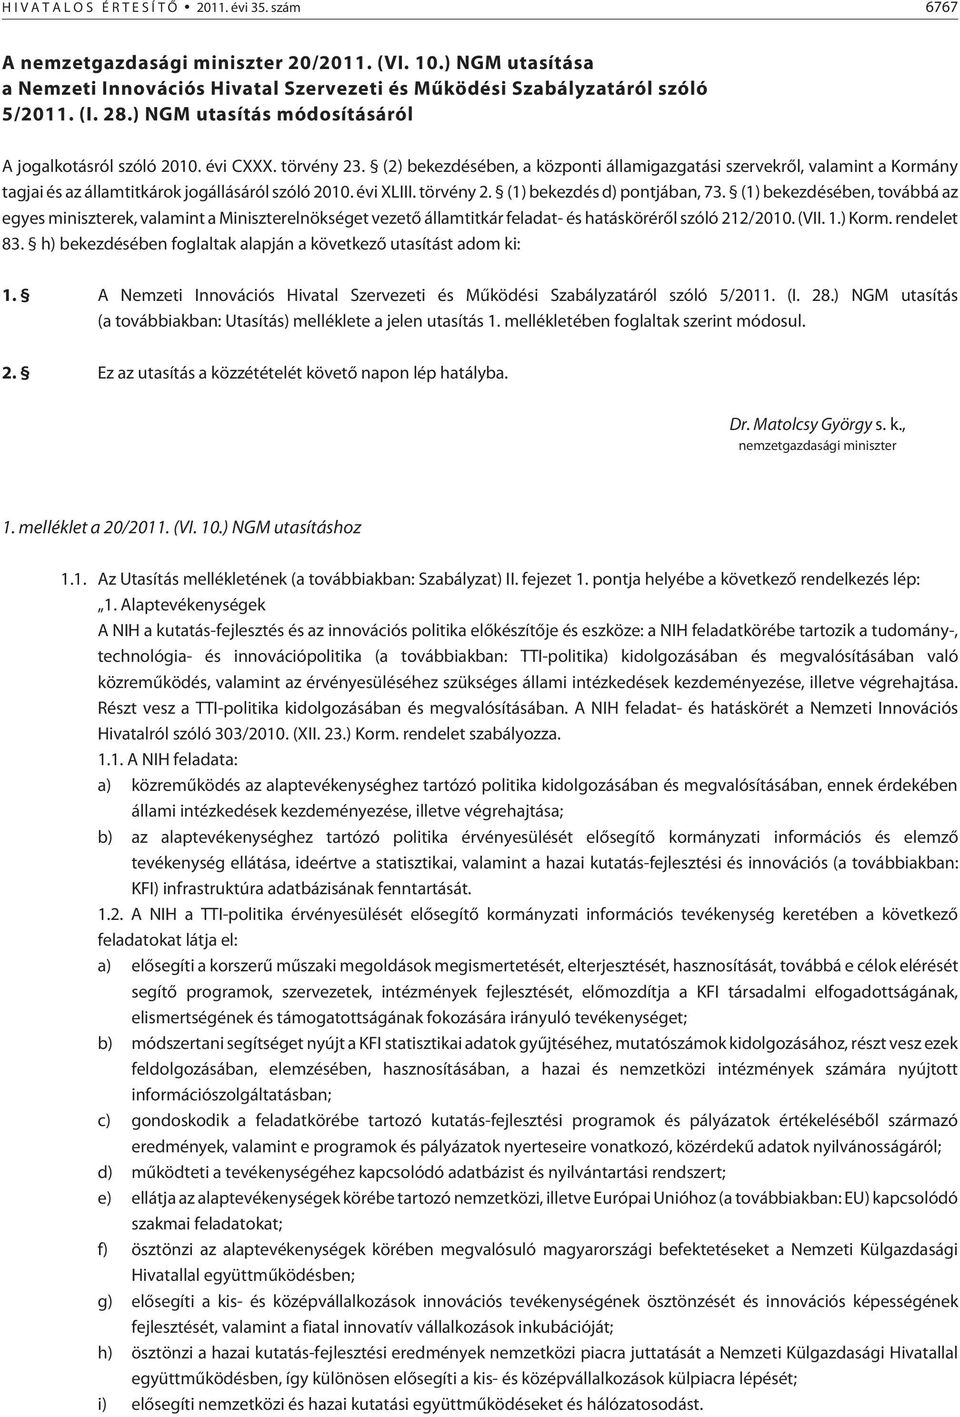 (2) bekezdésében, a központi államigazgatási szervekrõl, valamint a Kormány tagjai és az államtitkárok jogállásáról szóló 2010. évi XLIII. törvény 2. (1) bekezdés d) pontjában, 73.